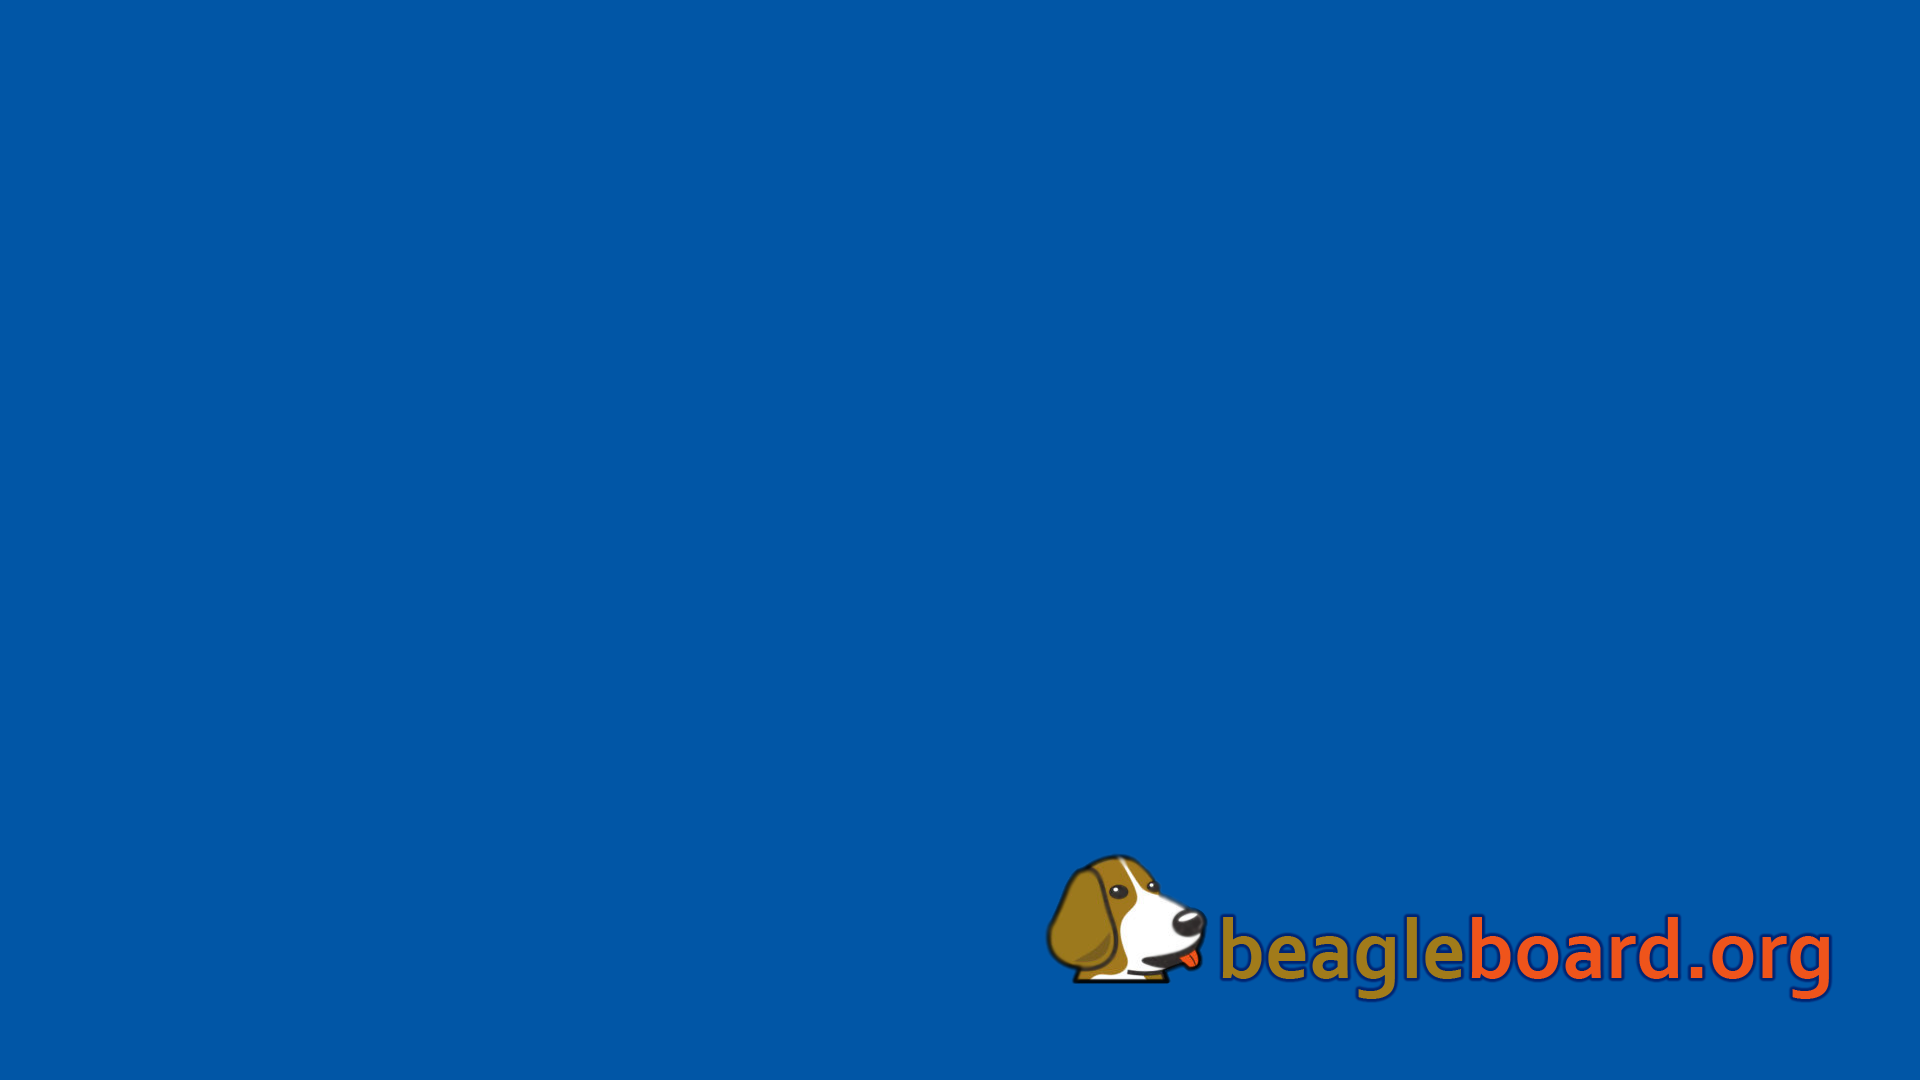 beaglebg-blue.png